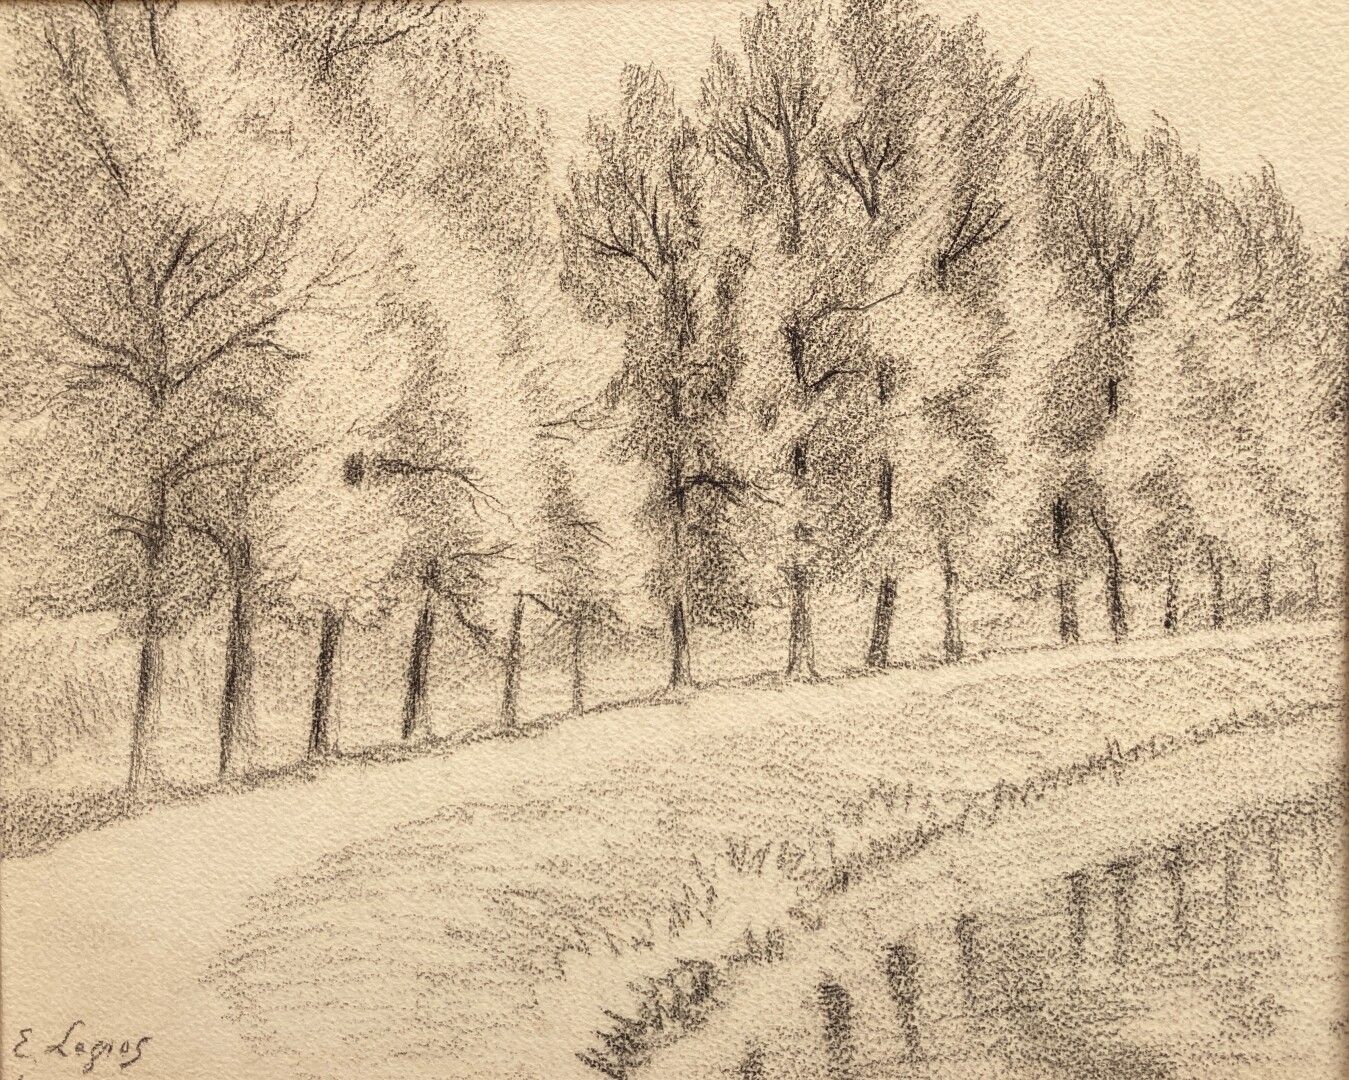 Null E.LEGROS

(1900年左右活跃)

卡斯特尔诺（Castelnaud）桥的景观

黑色铅笔

23,5 x 24,5 cm

位于底部的

&hellip;